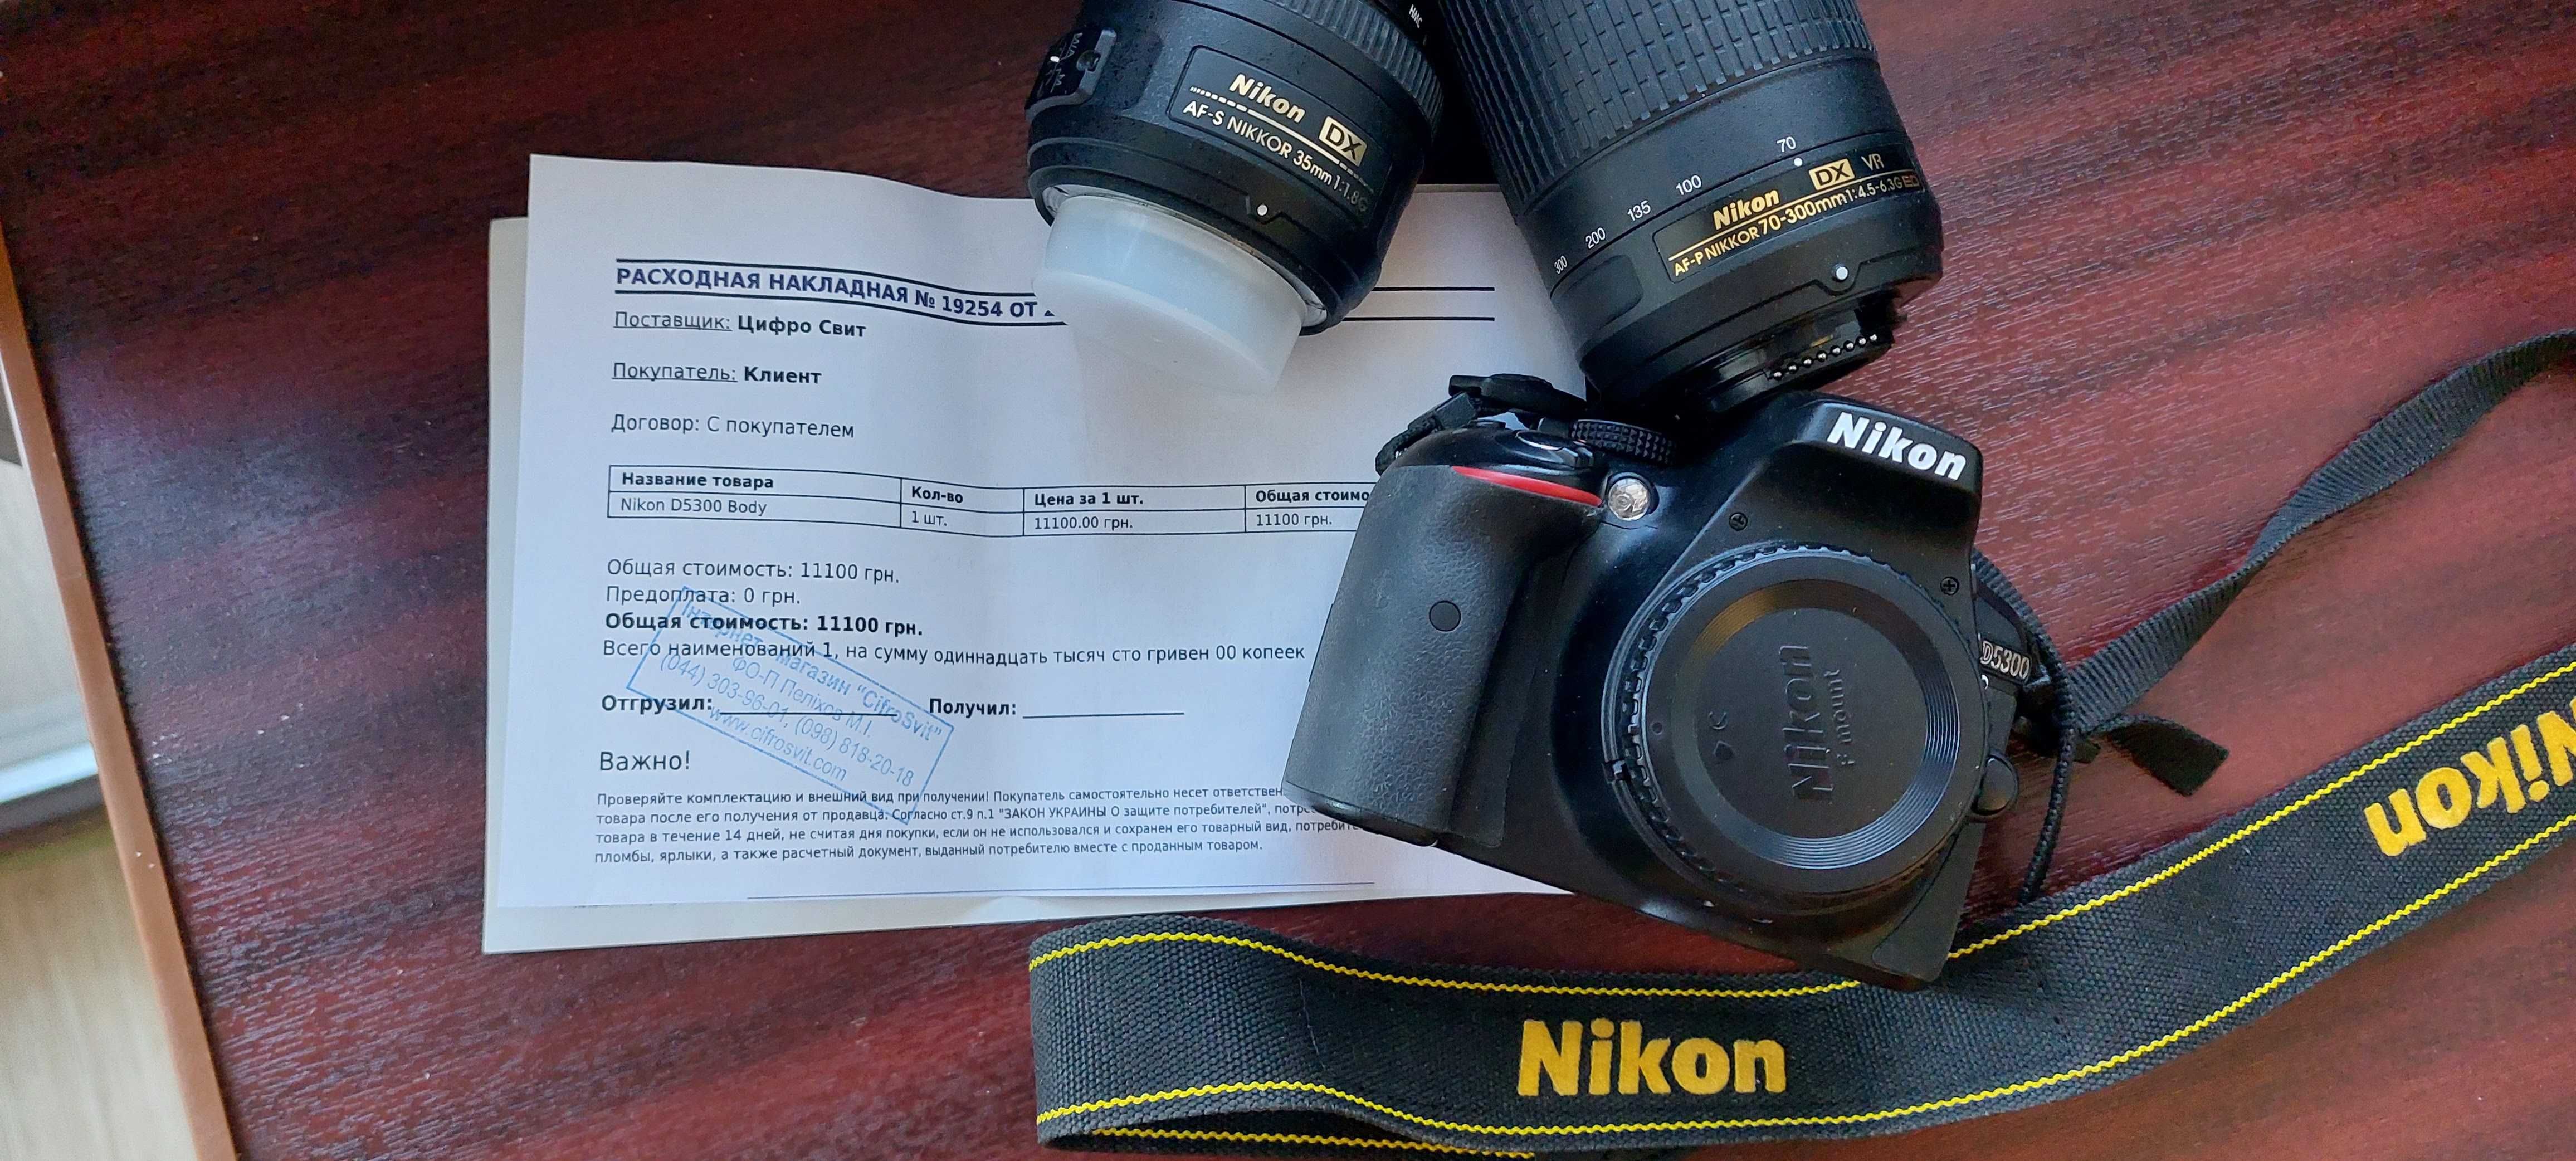 Nikon D5300 + AF-P DX VR 70-300mm f4.5-6.3G ED + DX AF-S 35mm 1:1.8G